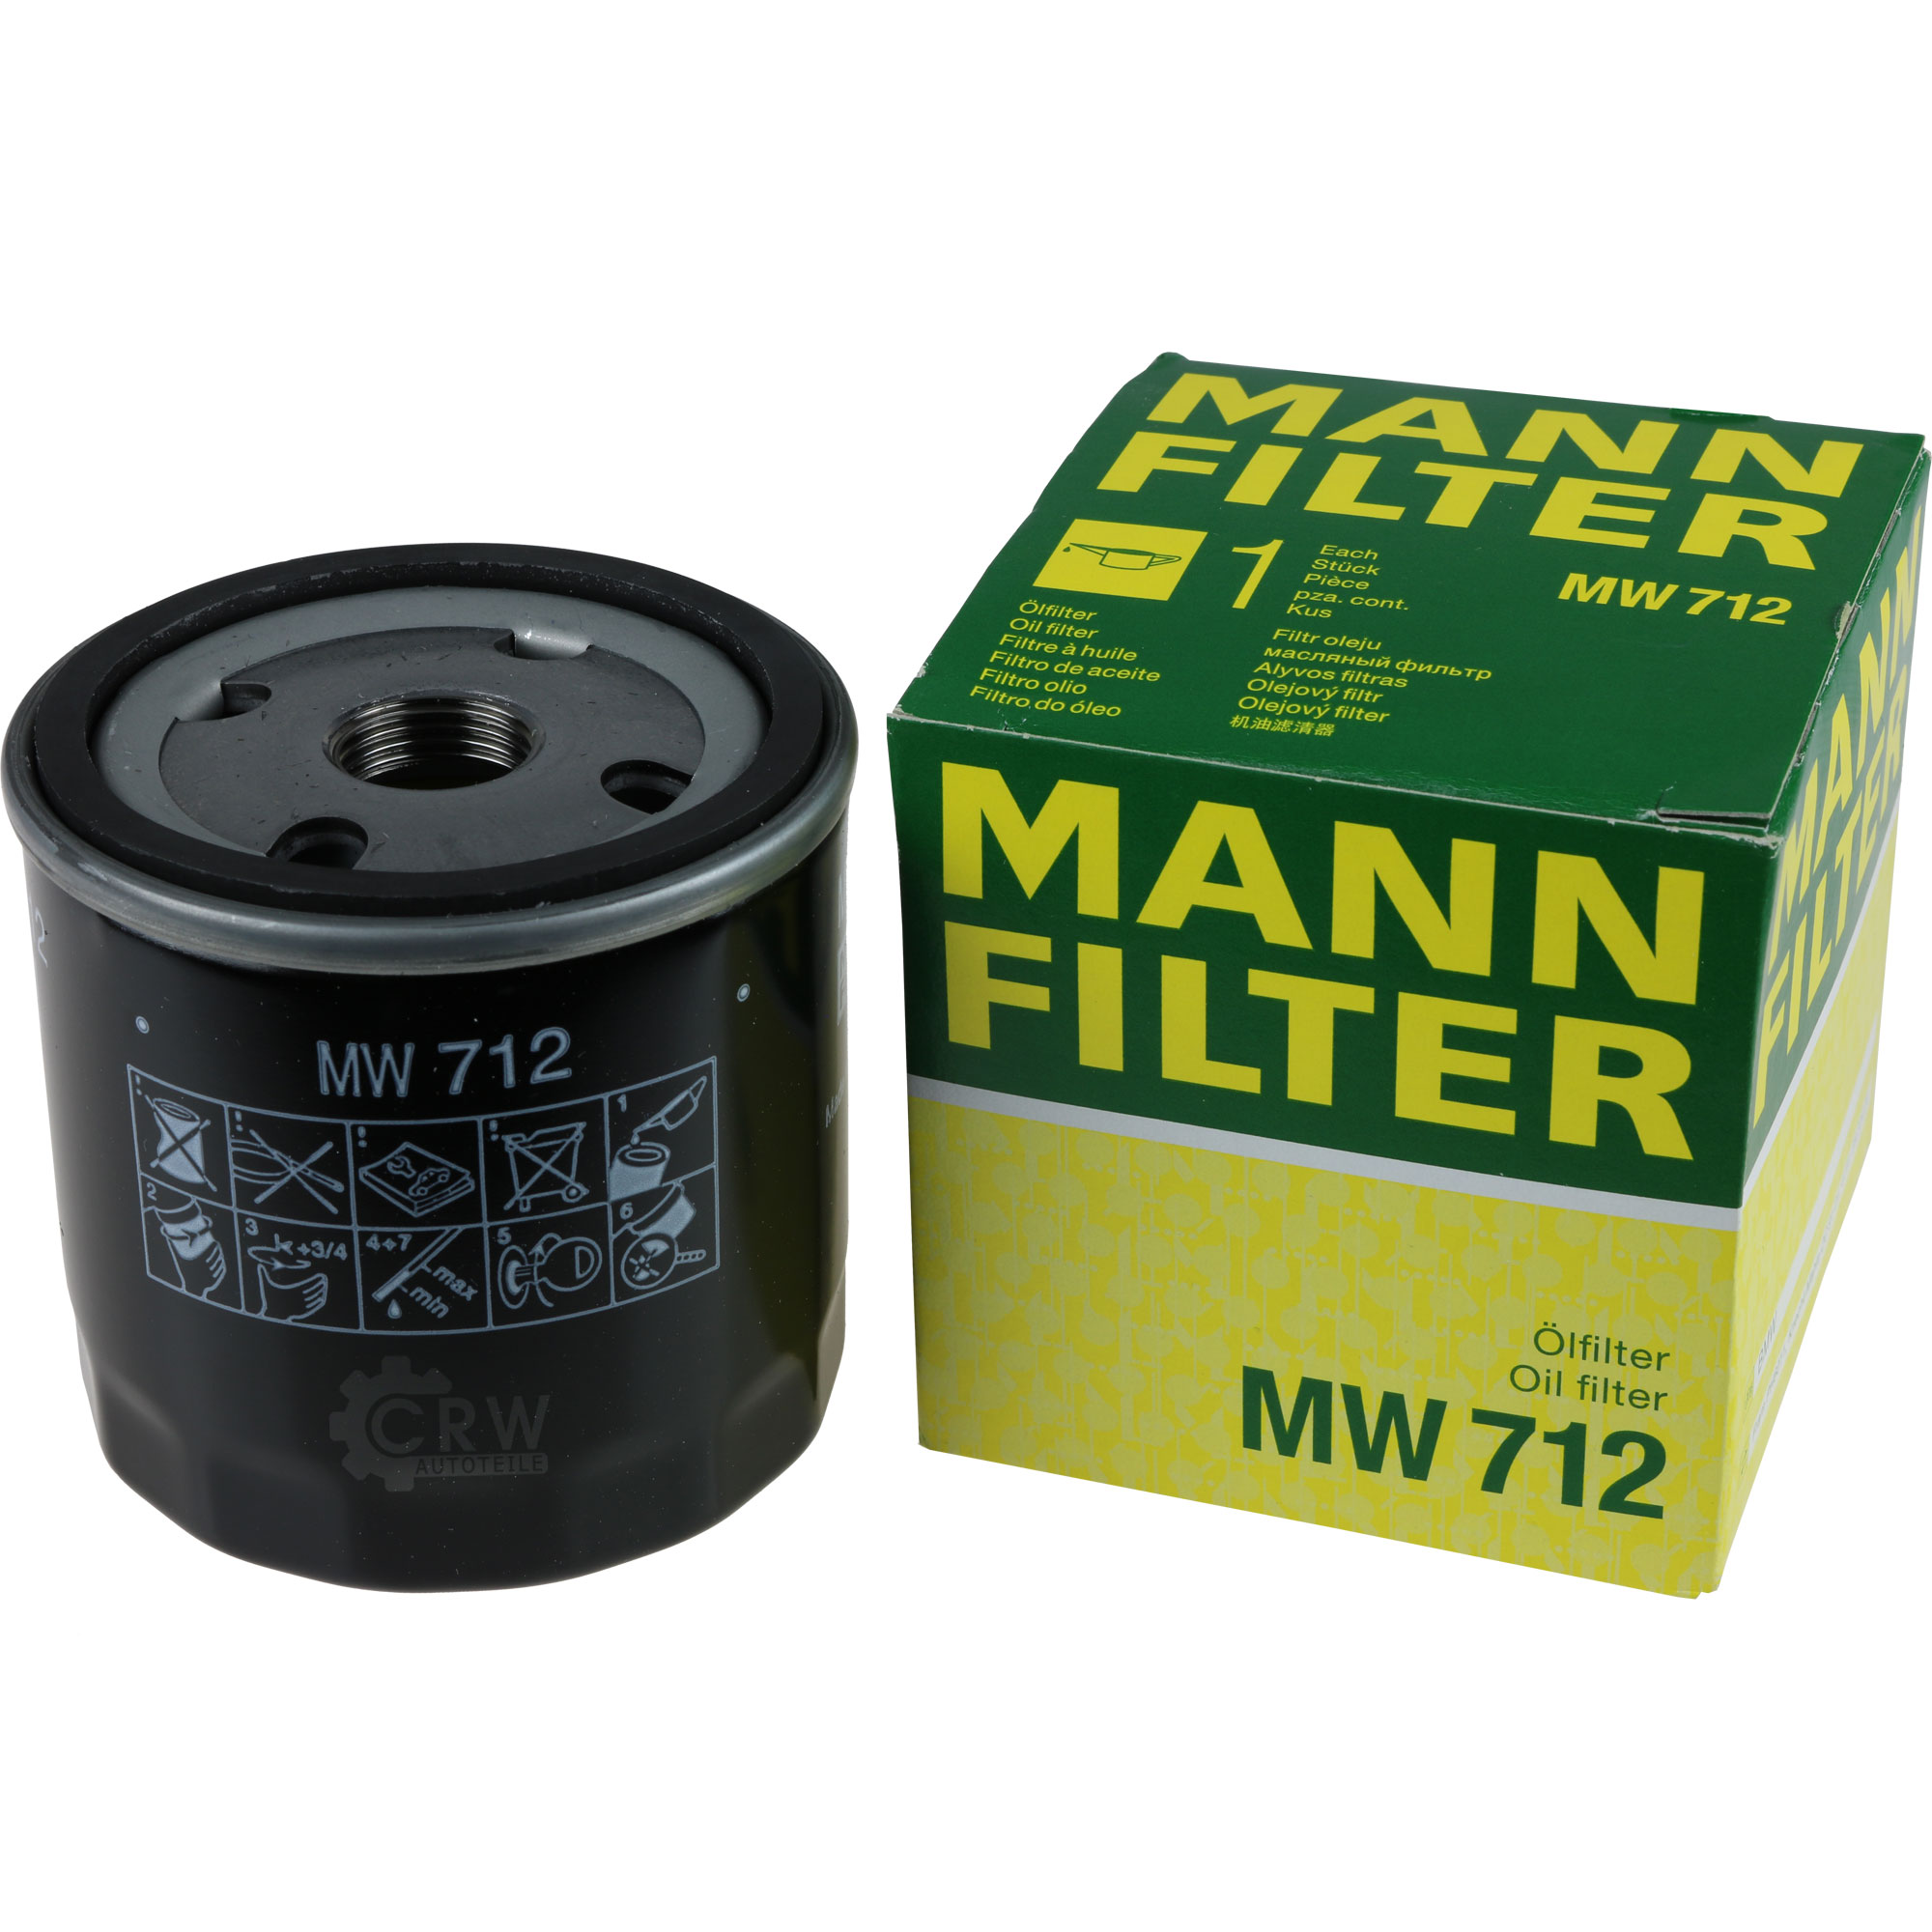 MANN-FILTER Ölfilter MW 712 Oil Filter